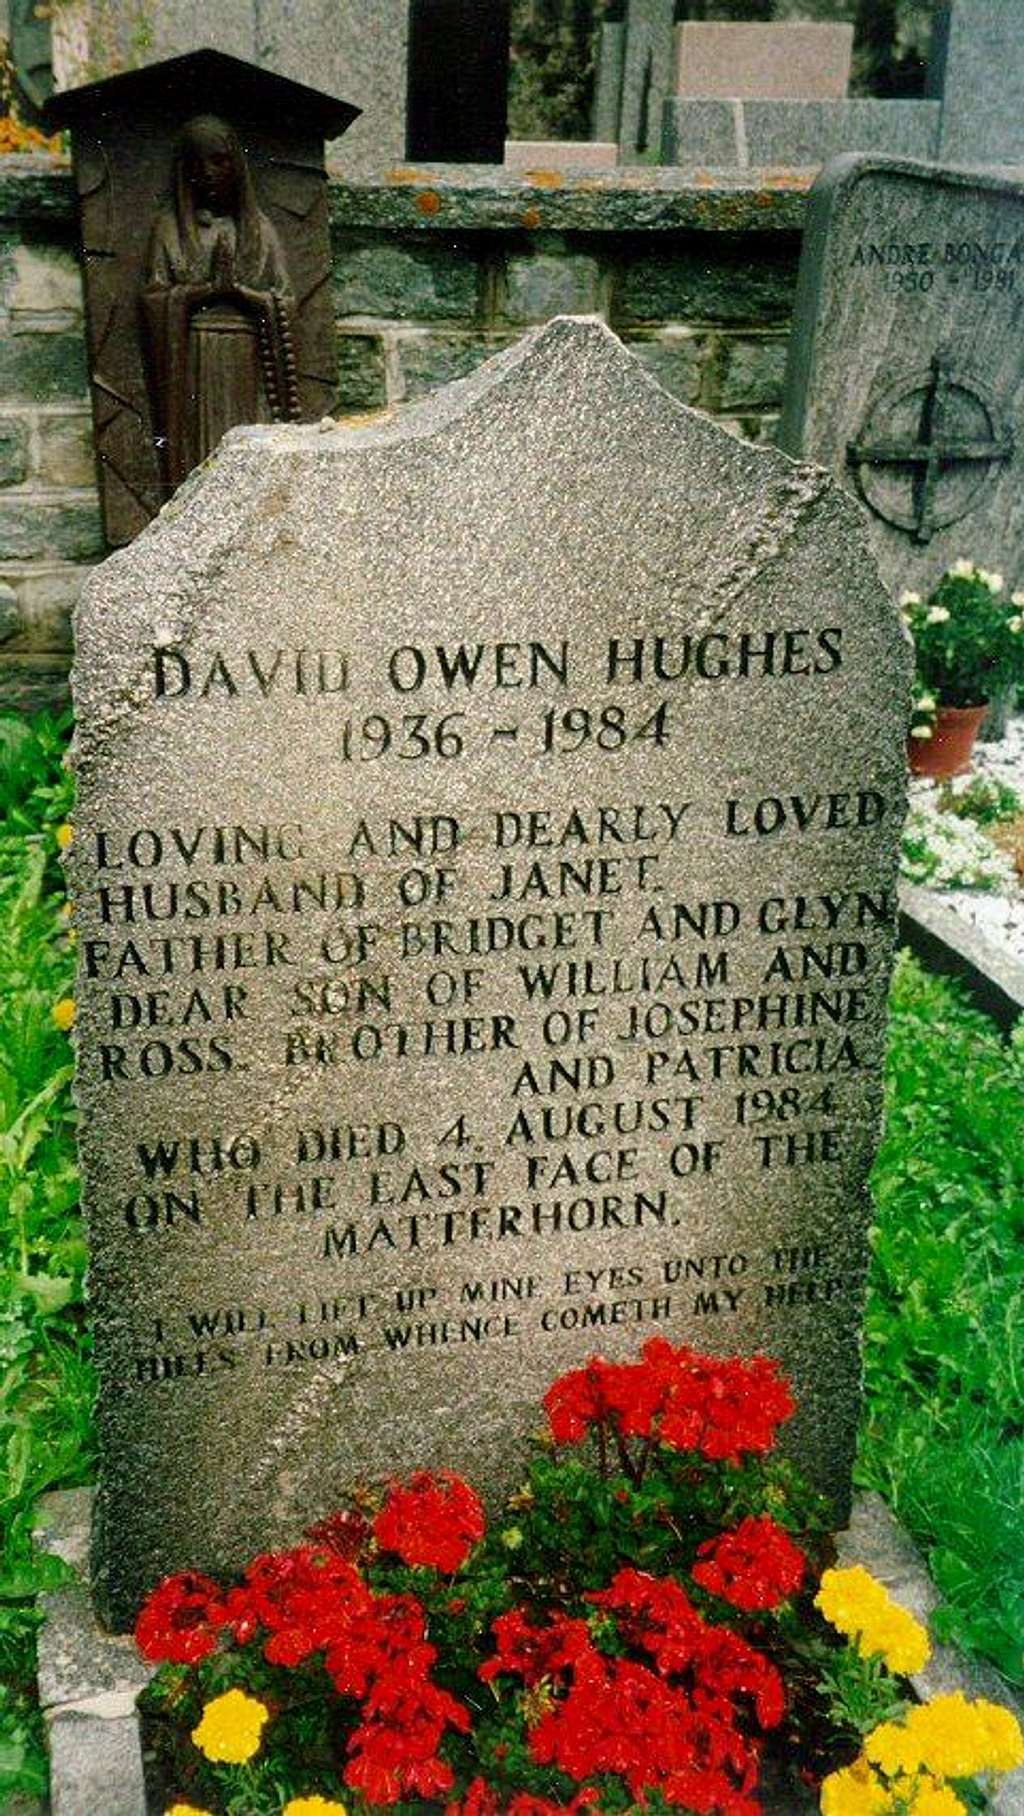 David Owen Hughes (1936-1984)